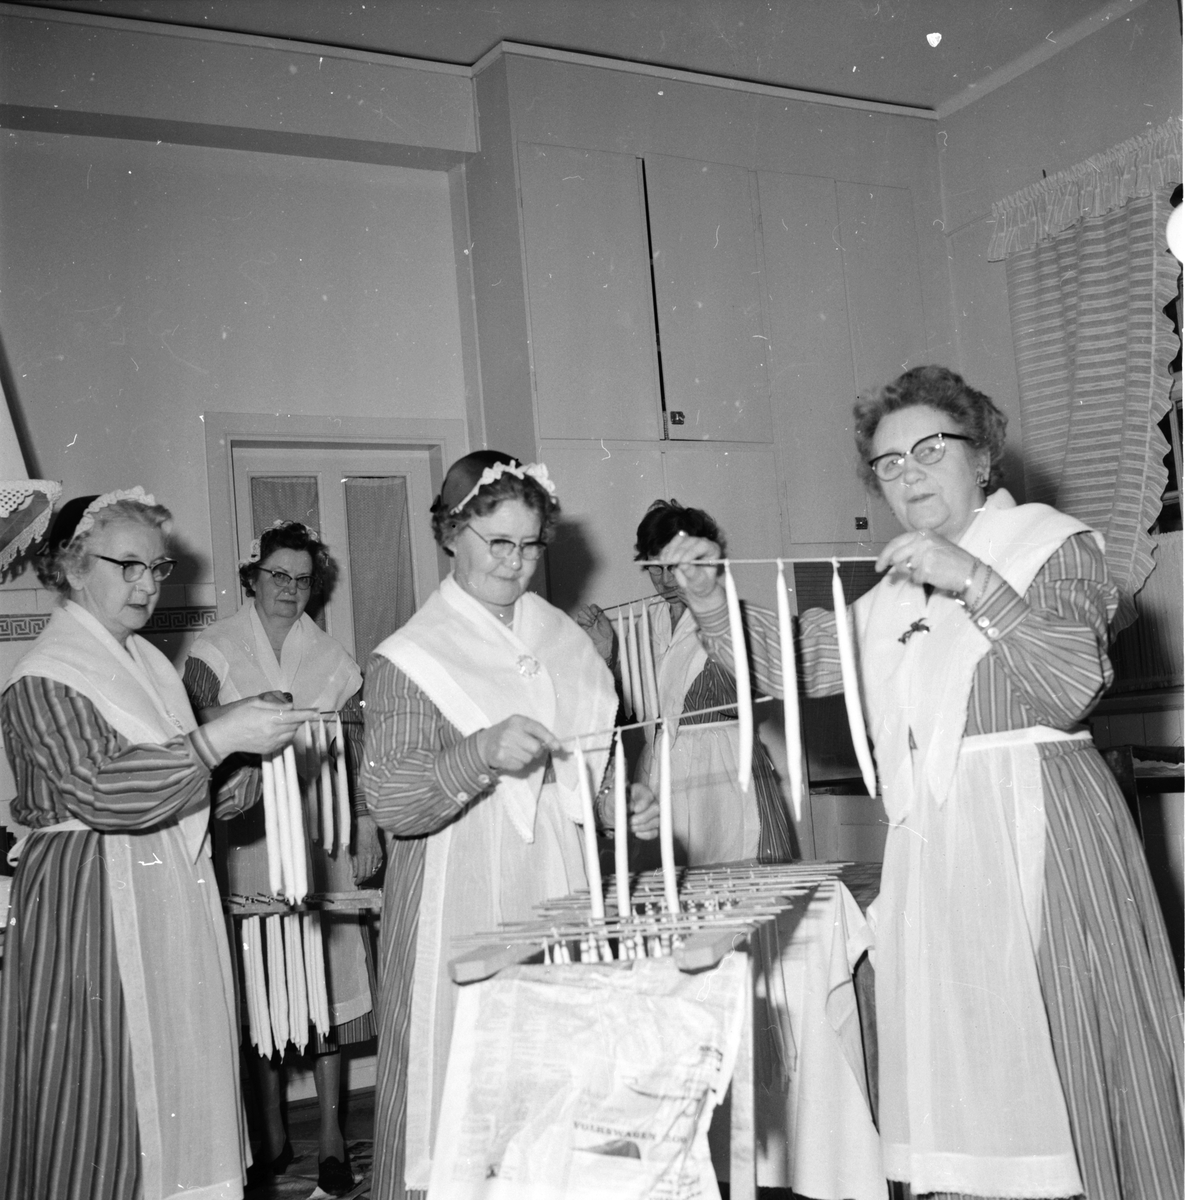 Ljusstöpning,
Husmodersföreningen,
22 November 1962
